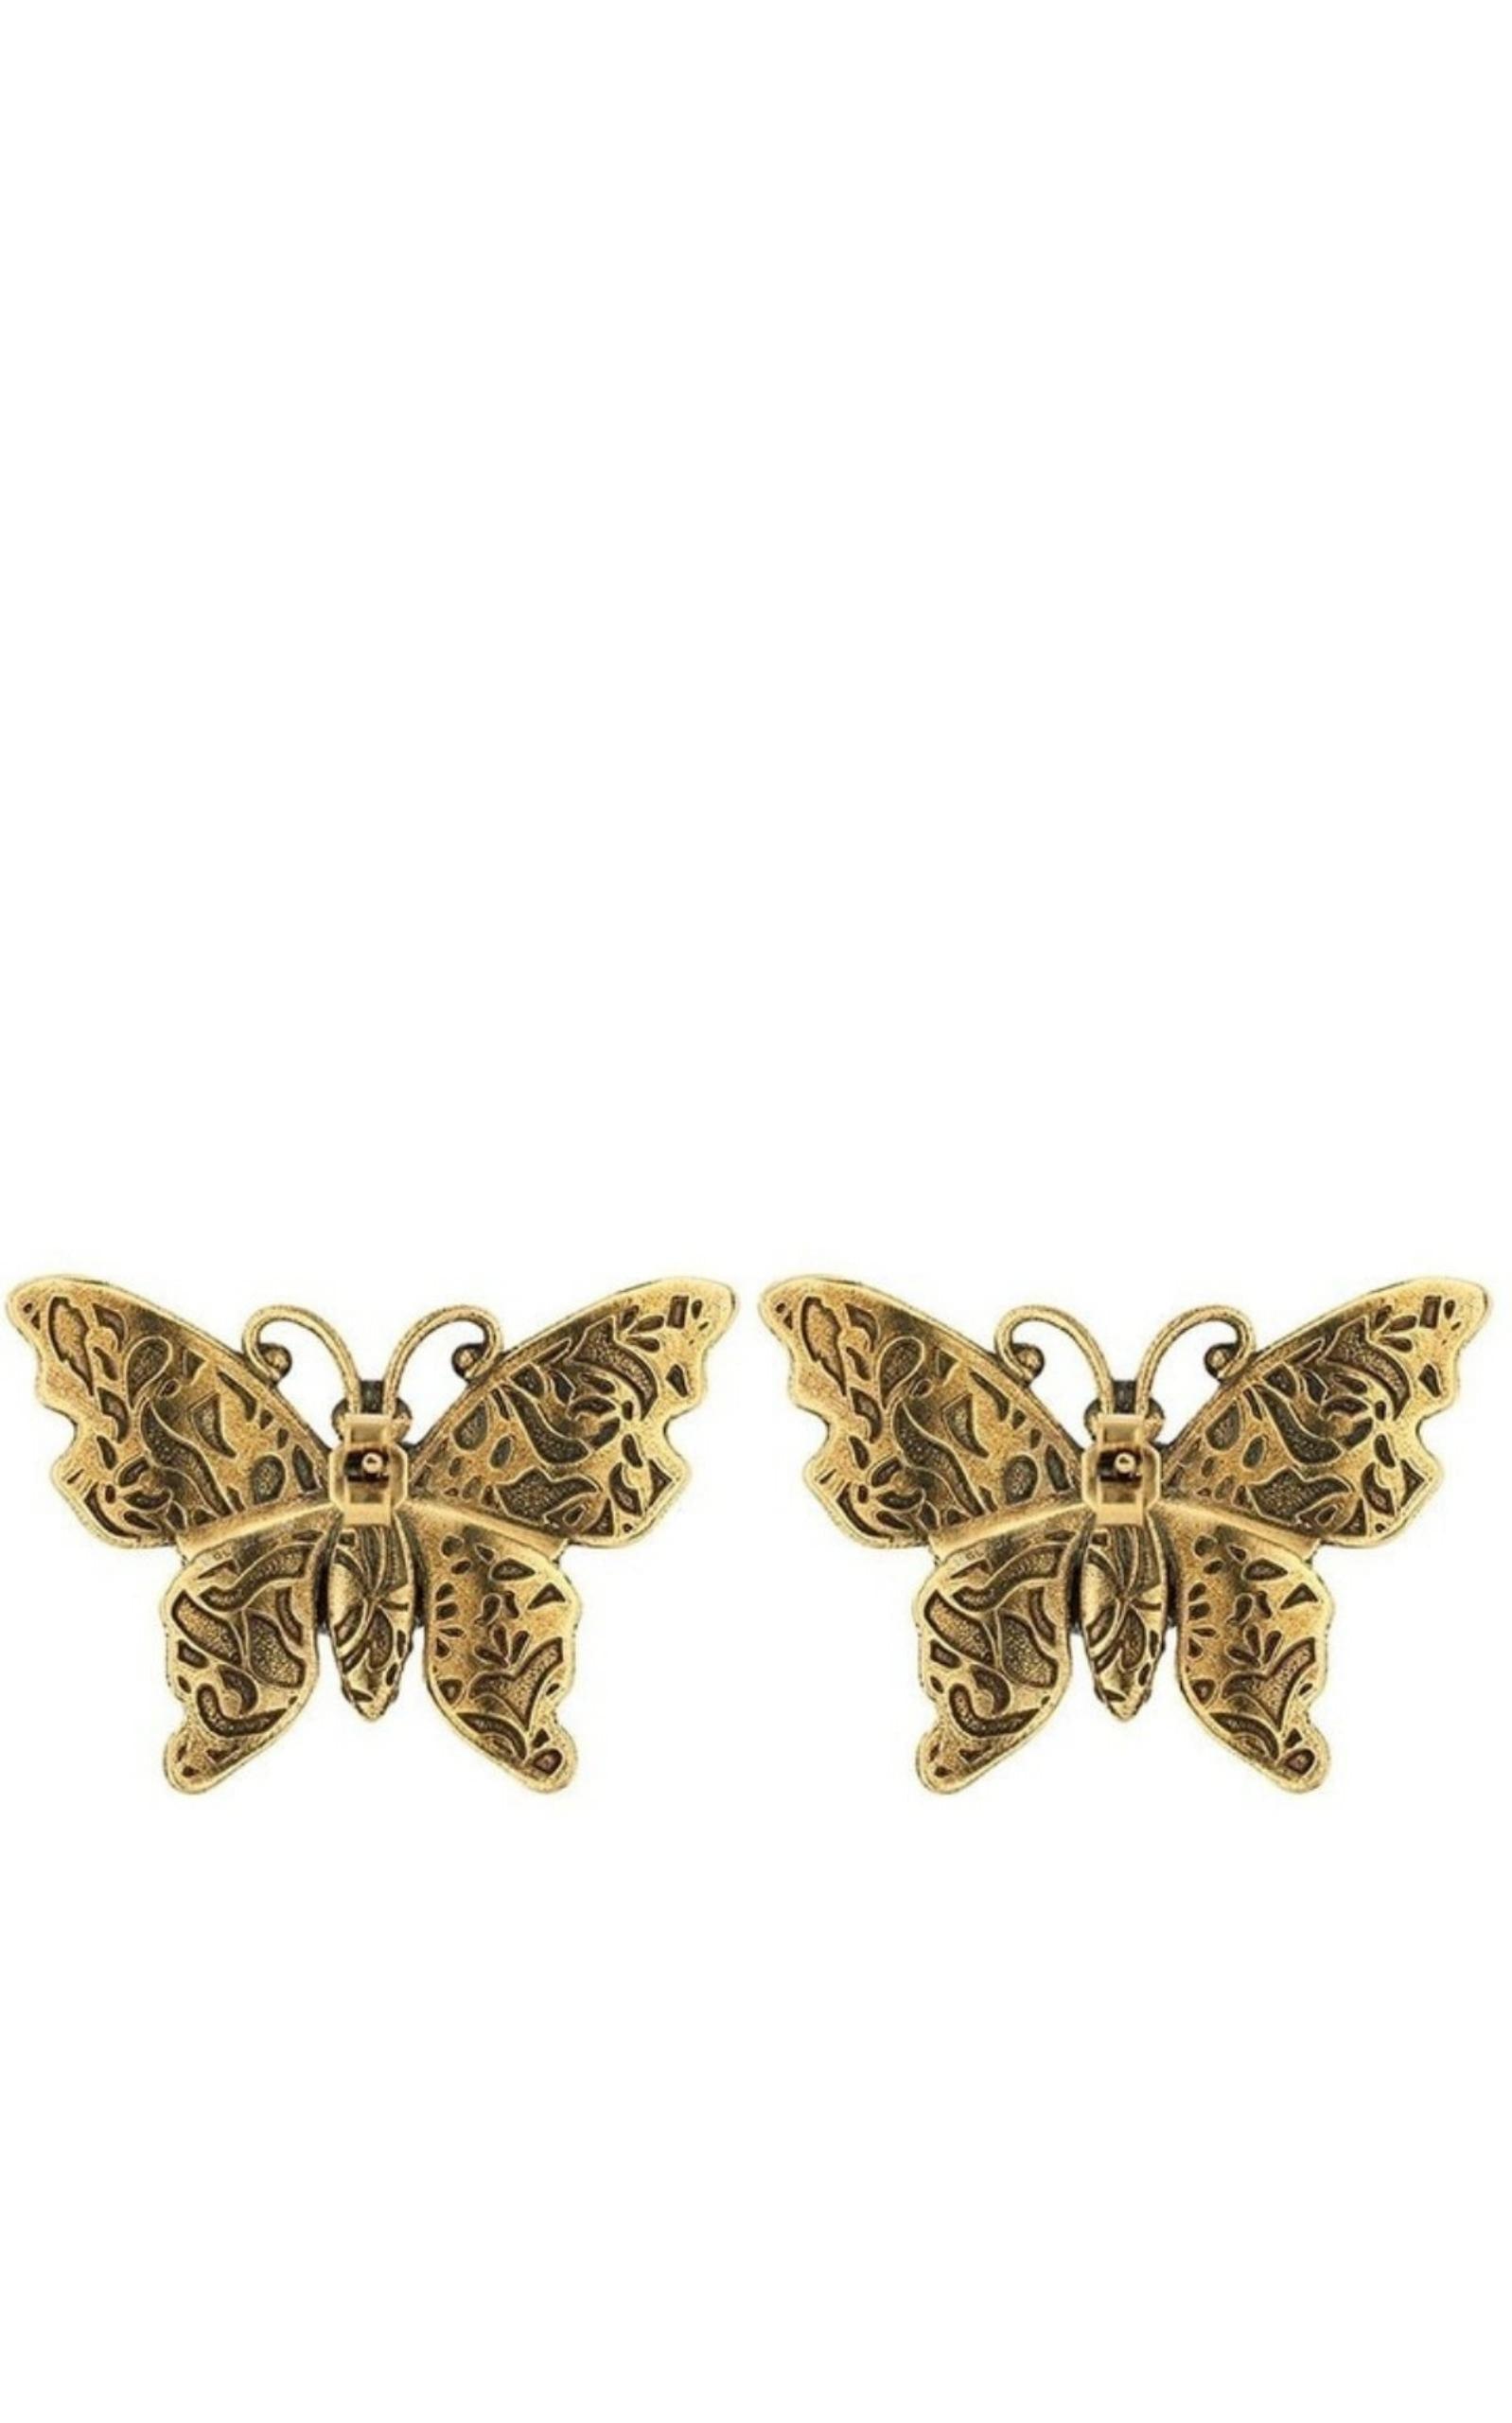 GUCCI Earrings Engraved Butterfly Motif Logo Hook Type Women's Silver | eBay